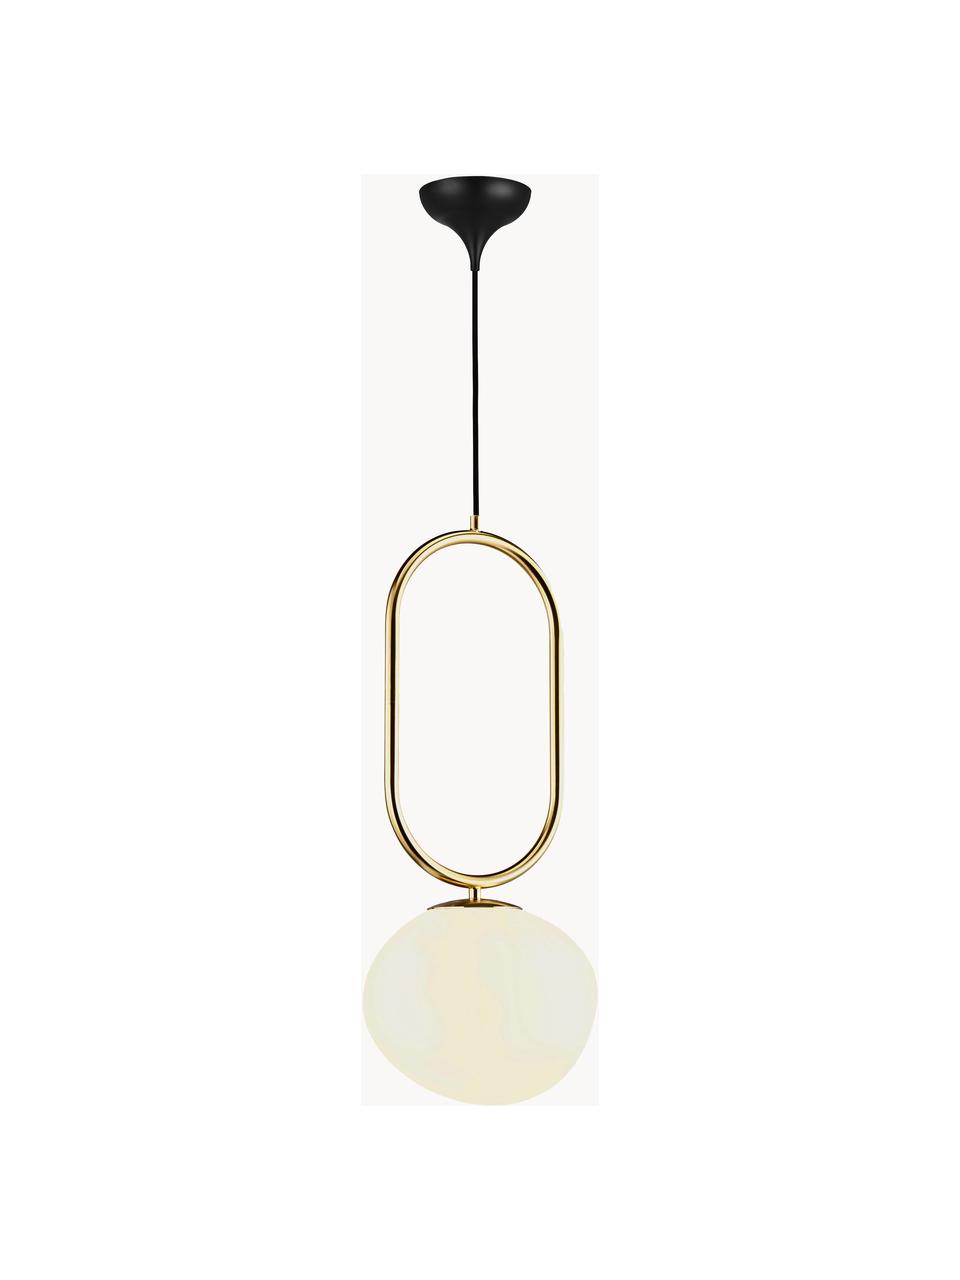 Malé skleněné závěsné svítidlo ve tvaru skleněné koule Shapes, Krémově bílá, zlatá, Ø 22 cm